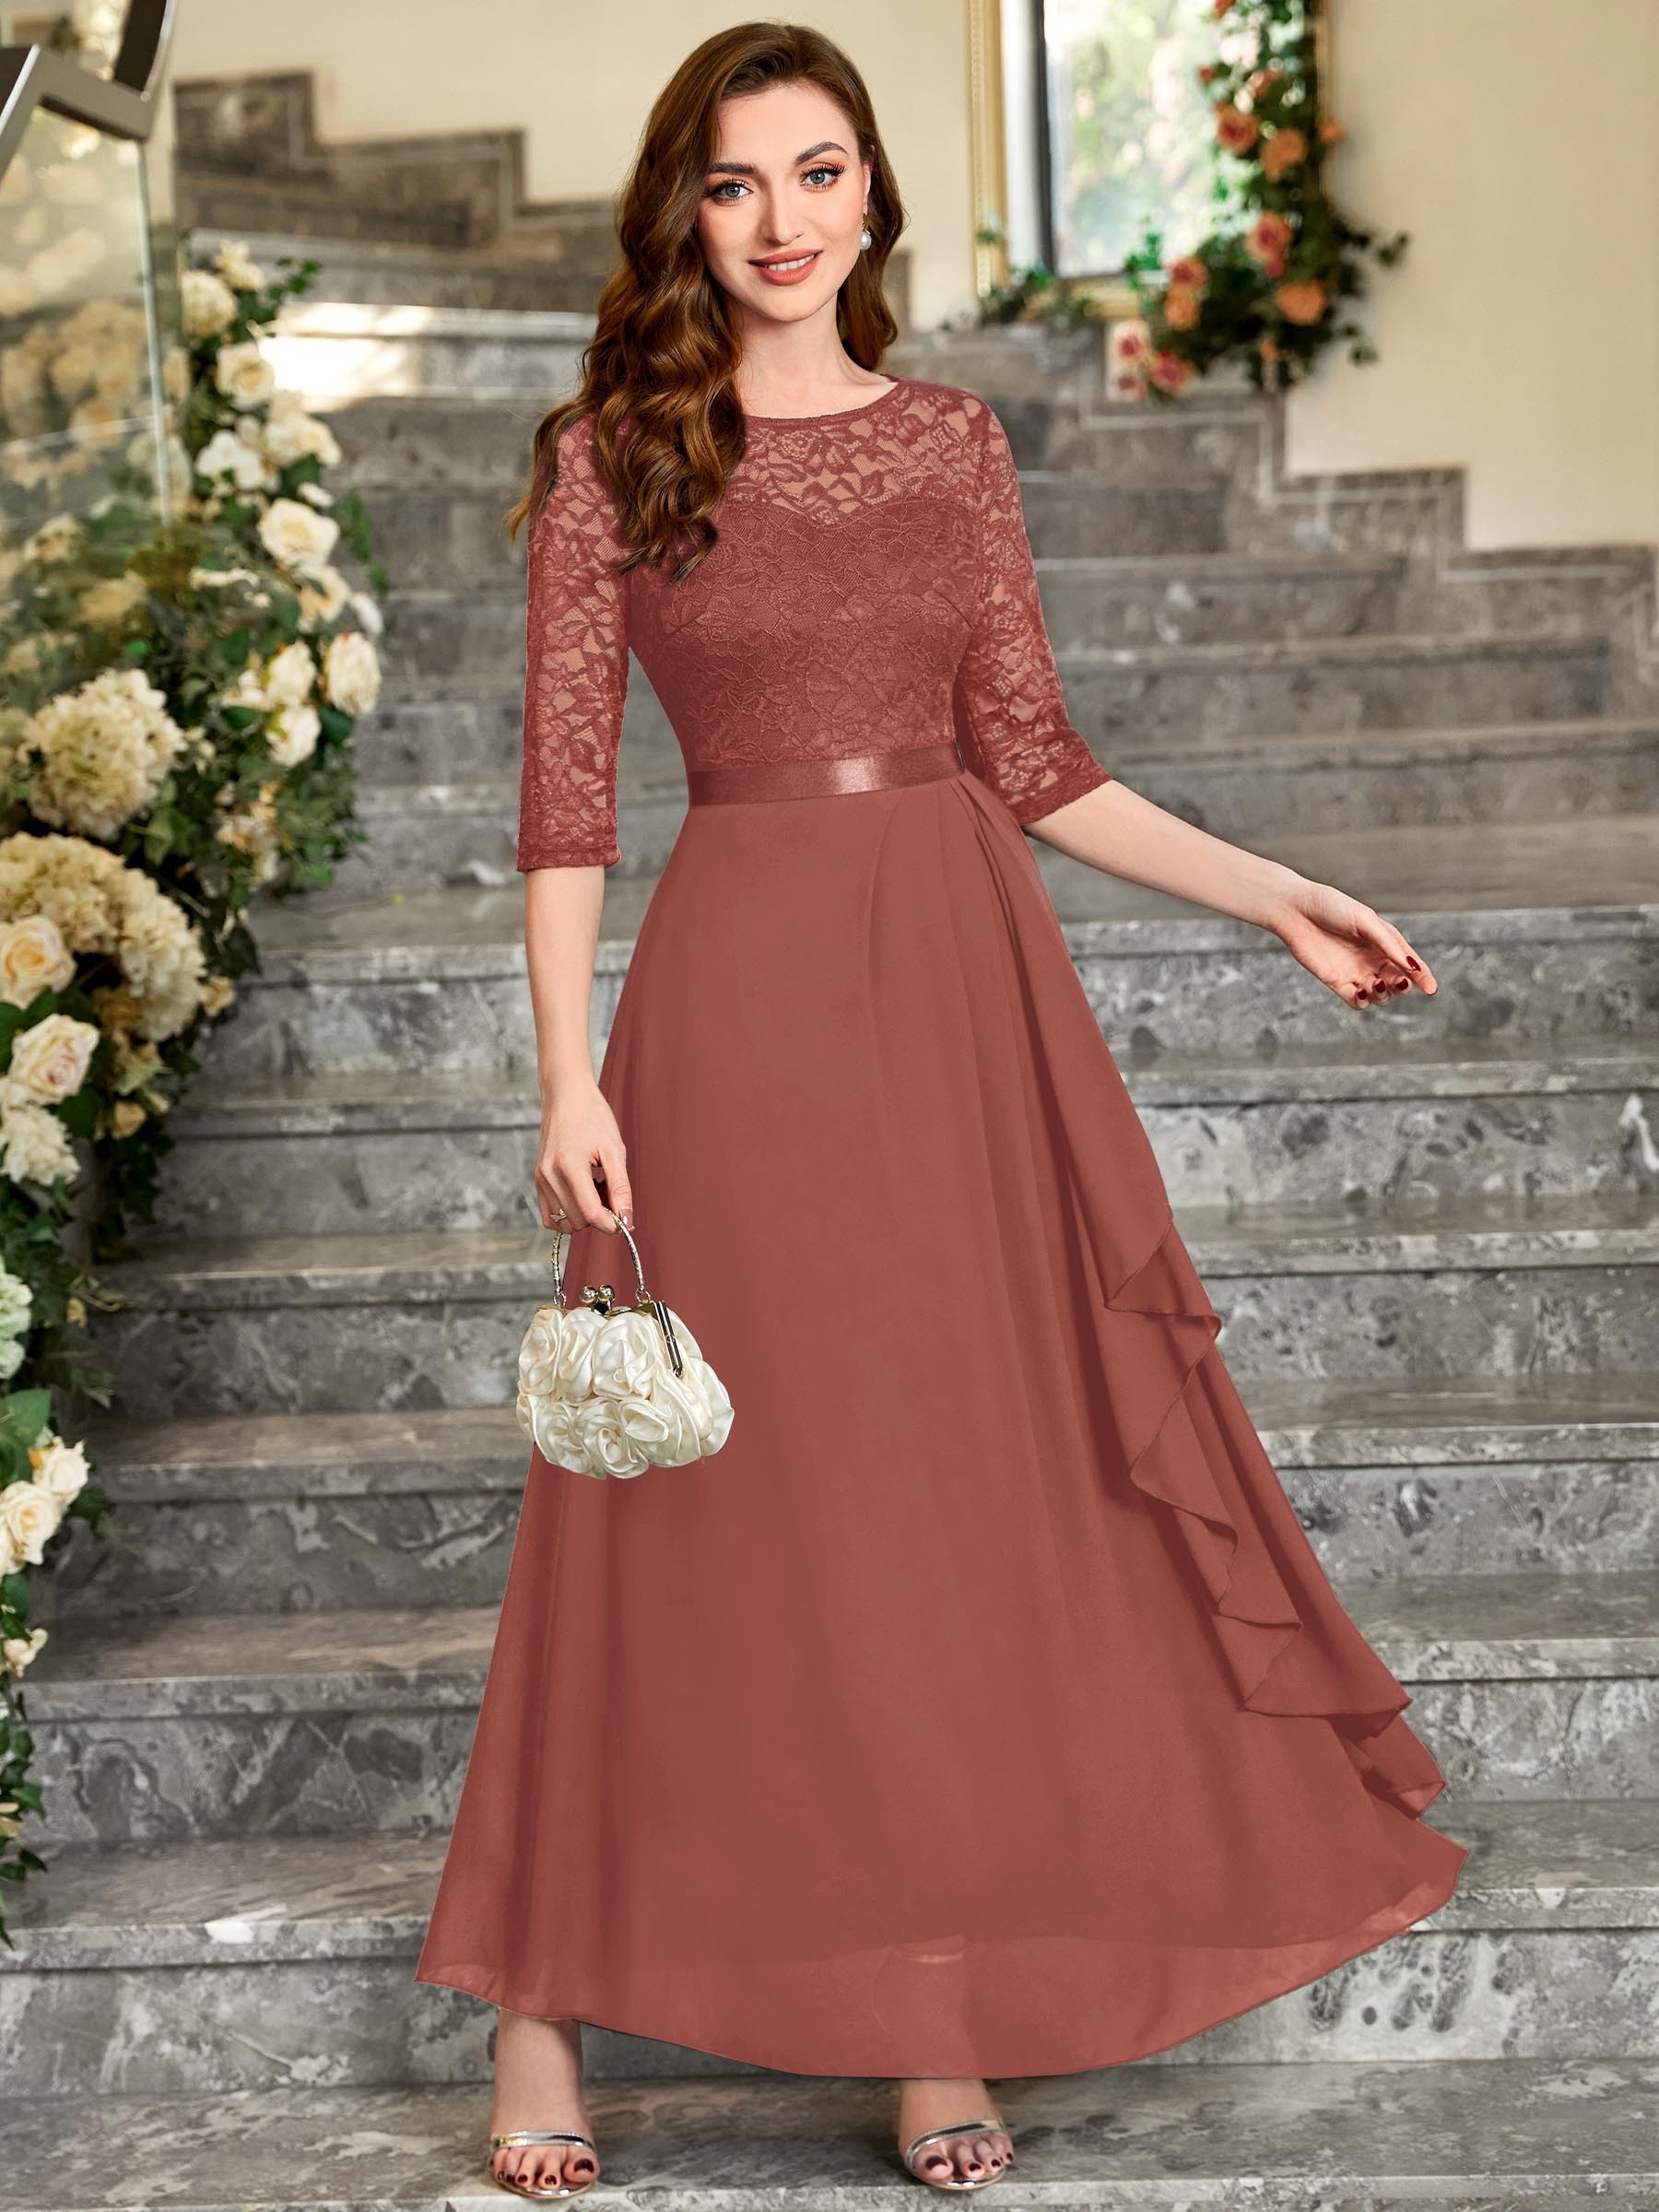 8 Best Maroon lace dress ideas  lace dress, dress, maroon lace dress